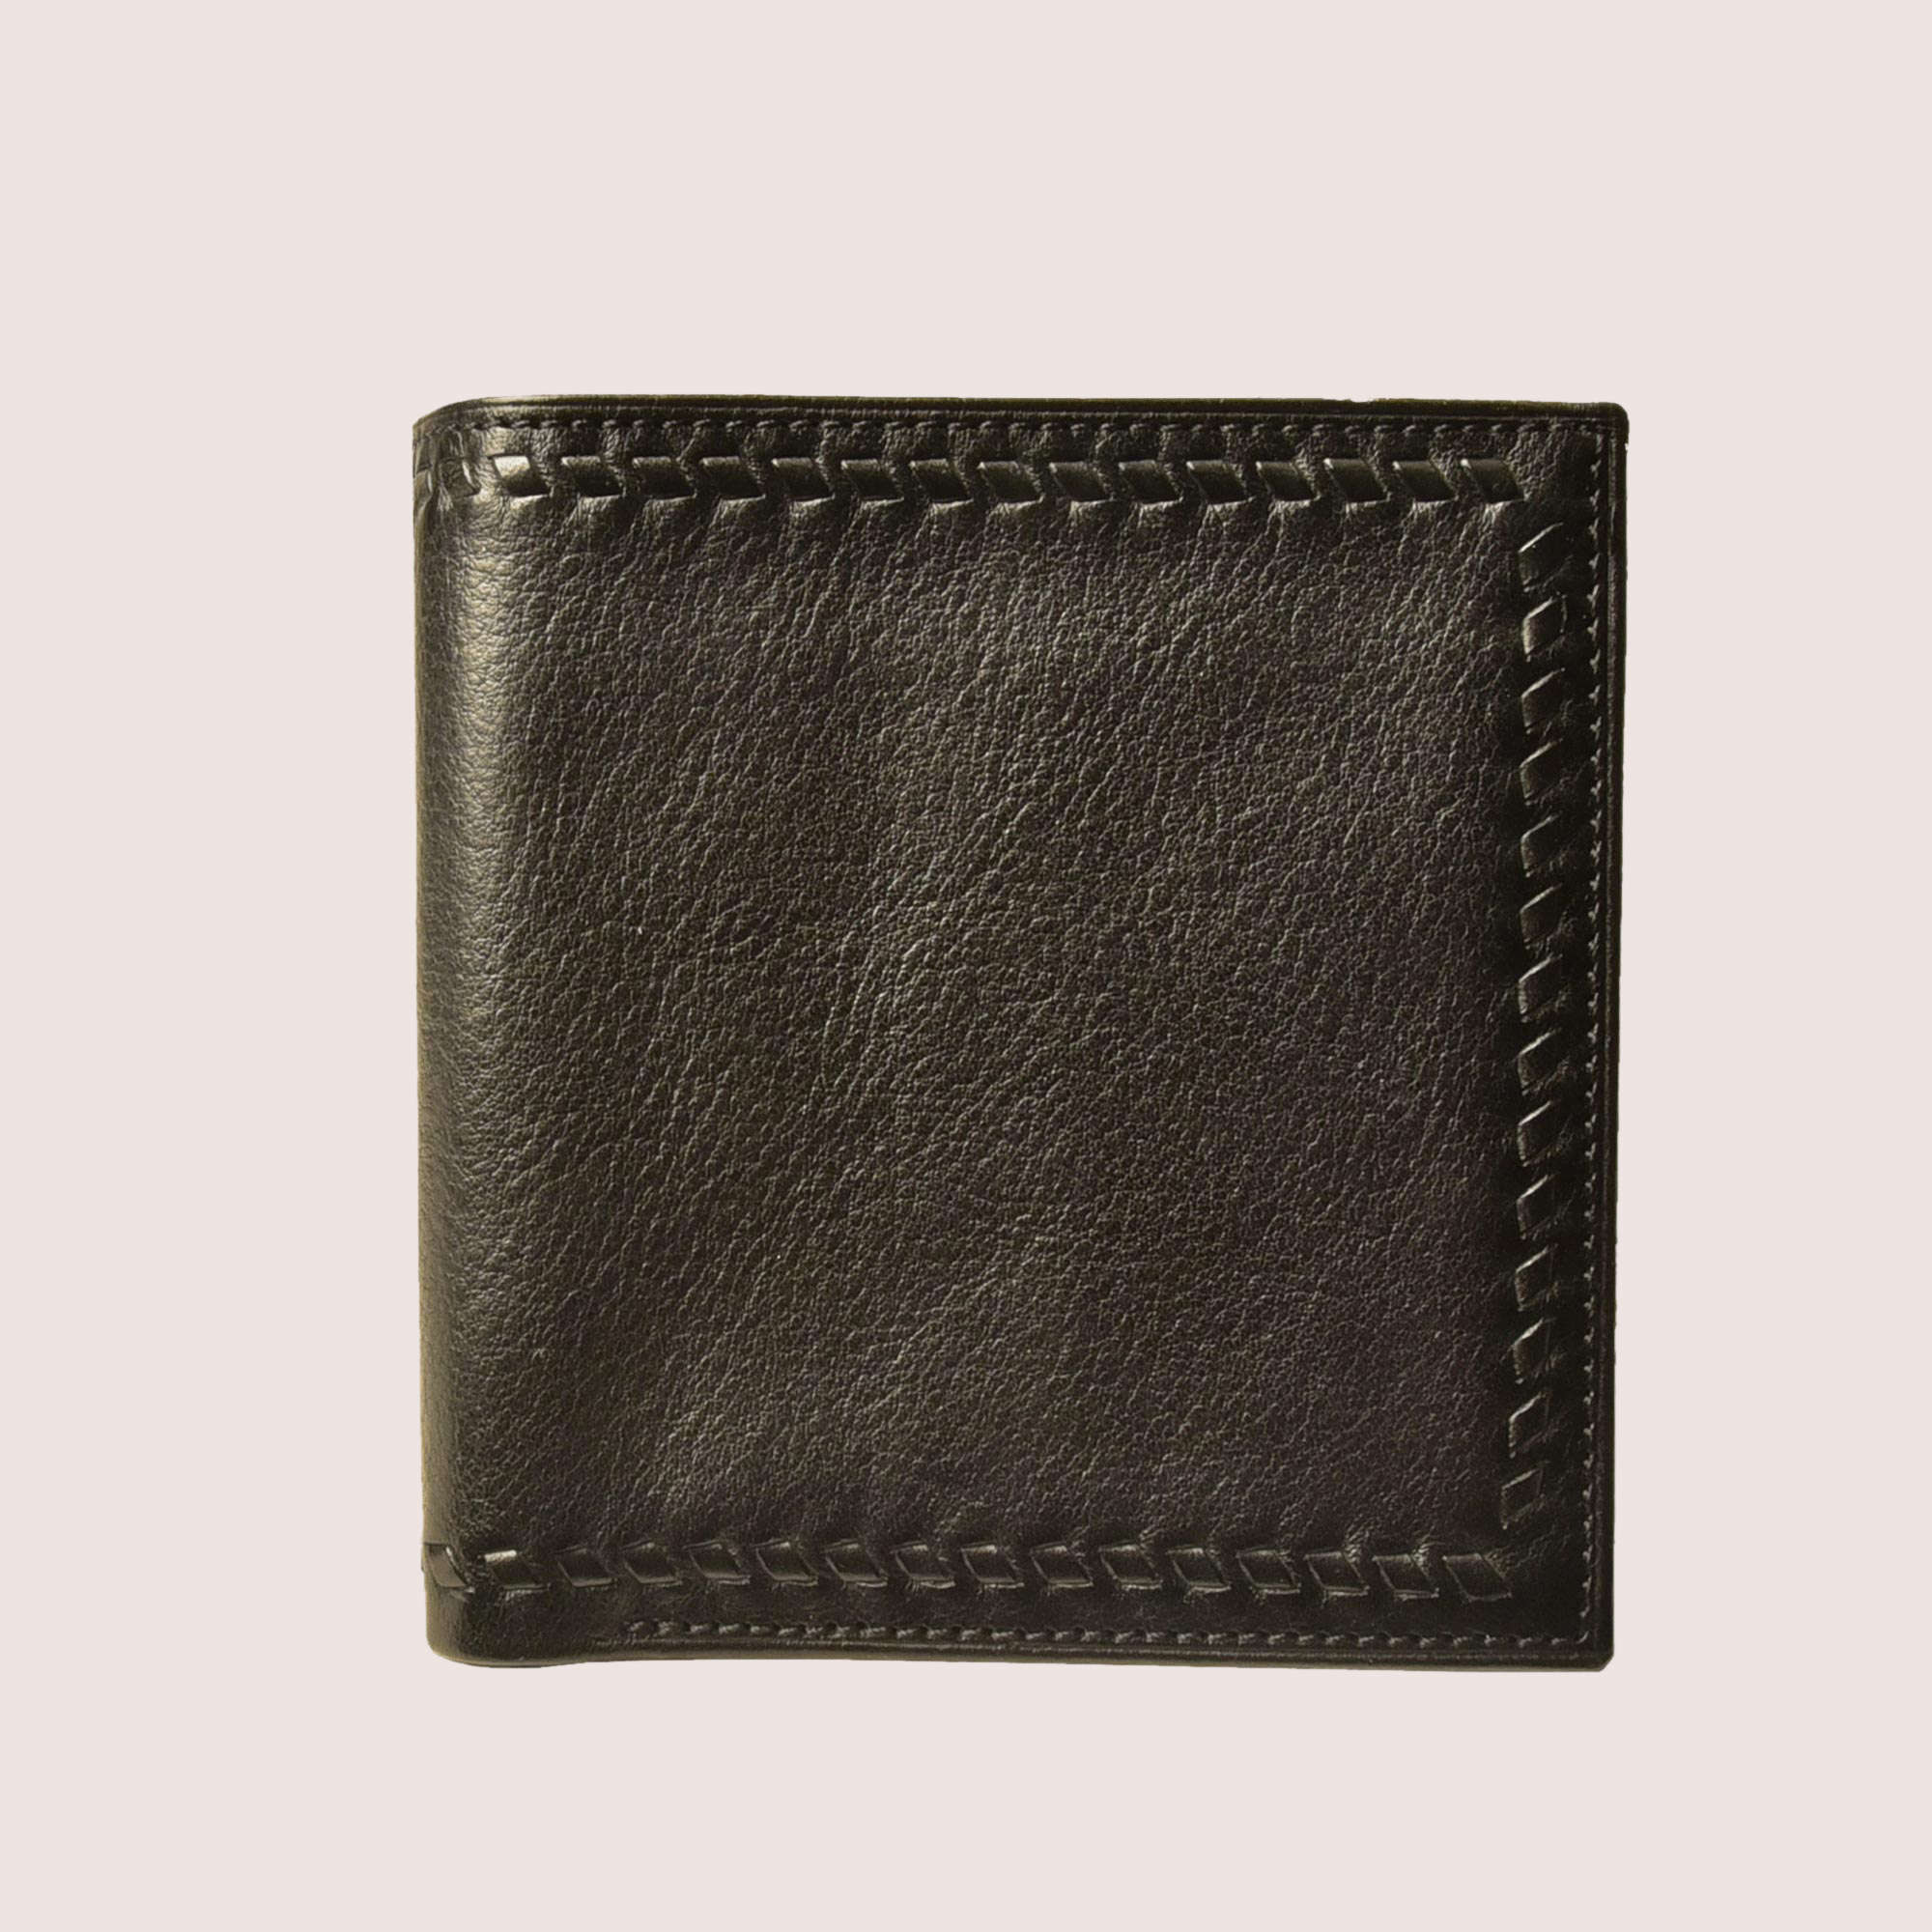 Steinbeck Hand-Stitched Wallet